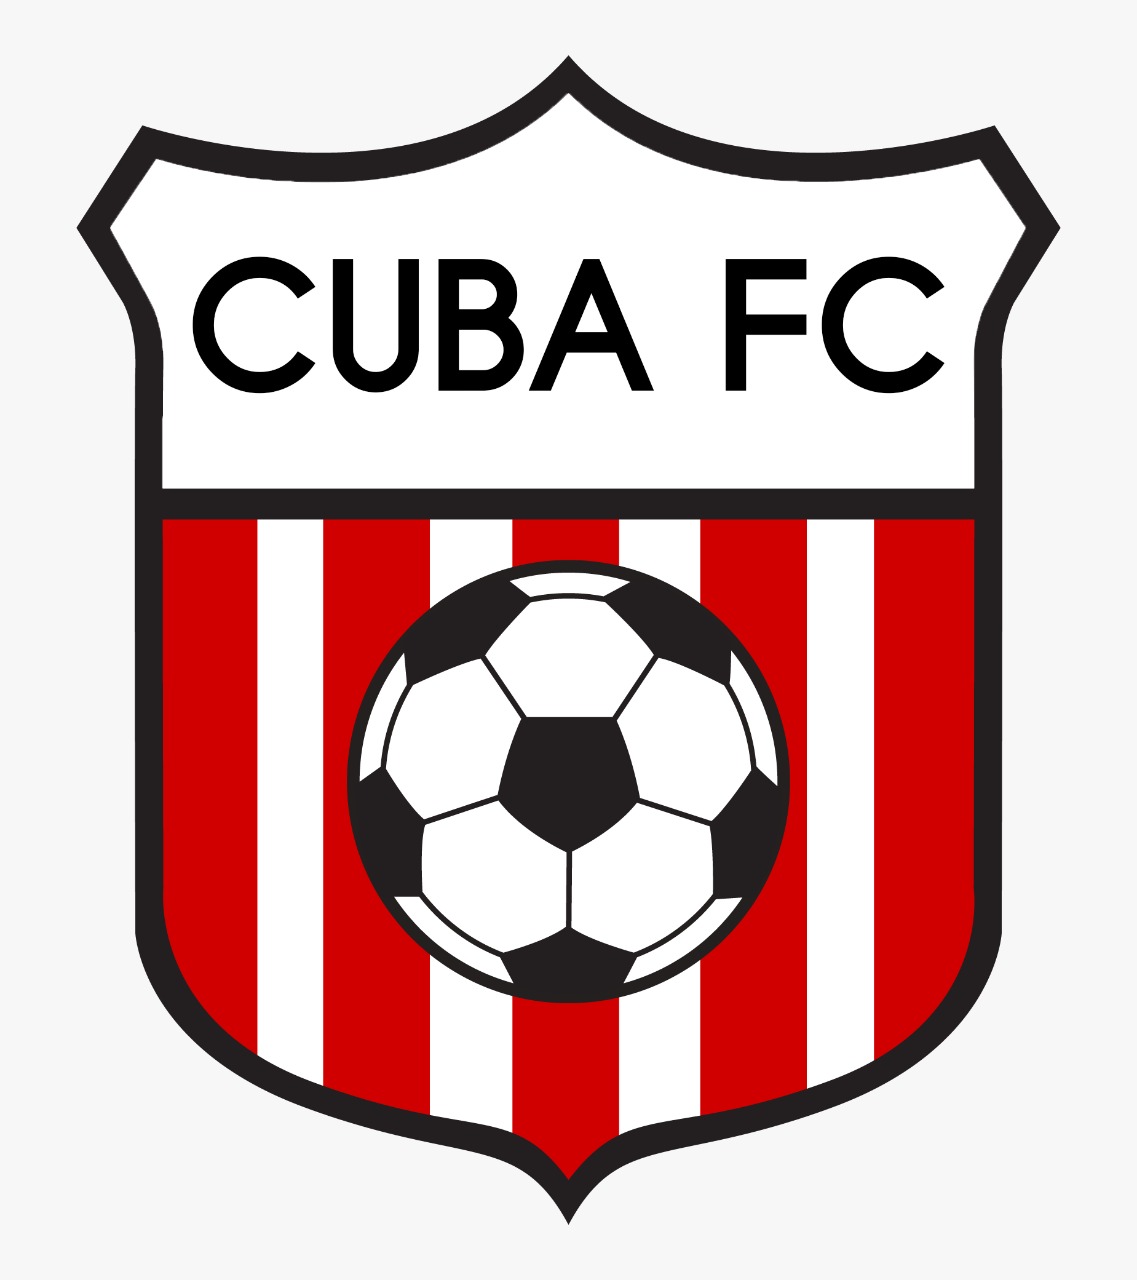 CUBA FC vs. FC Rocket - 2 : 1